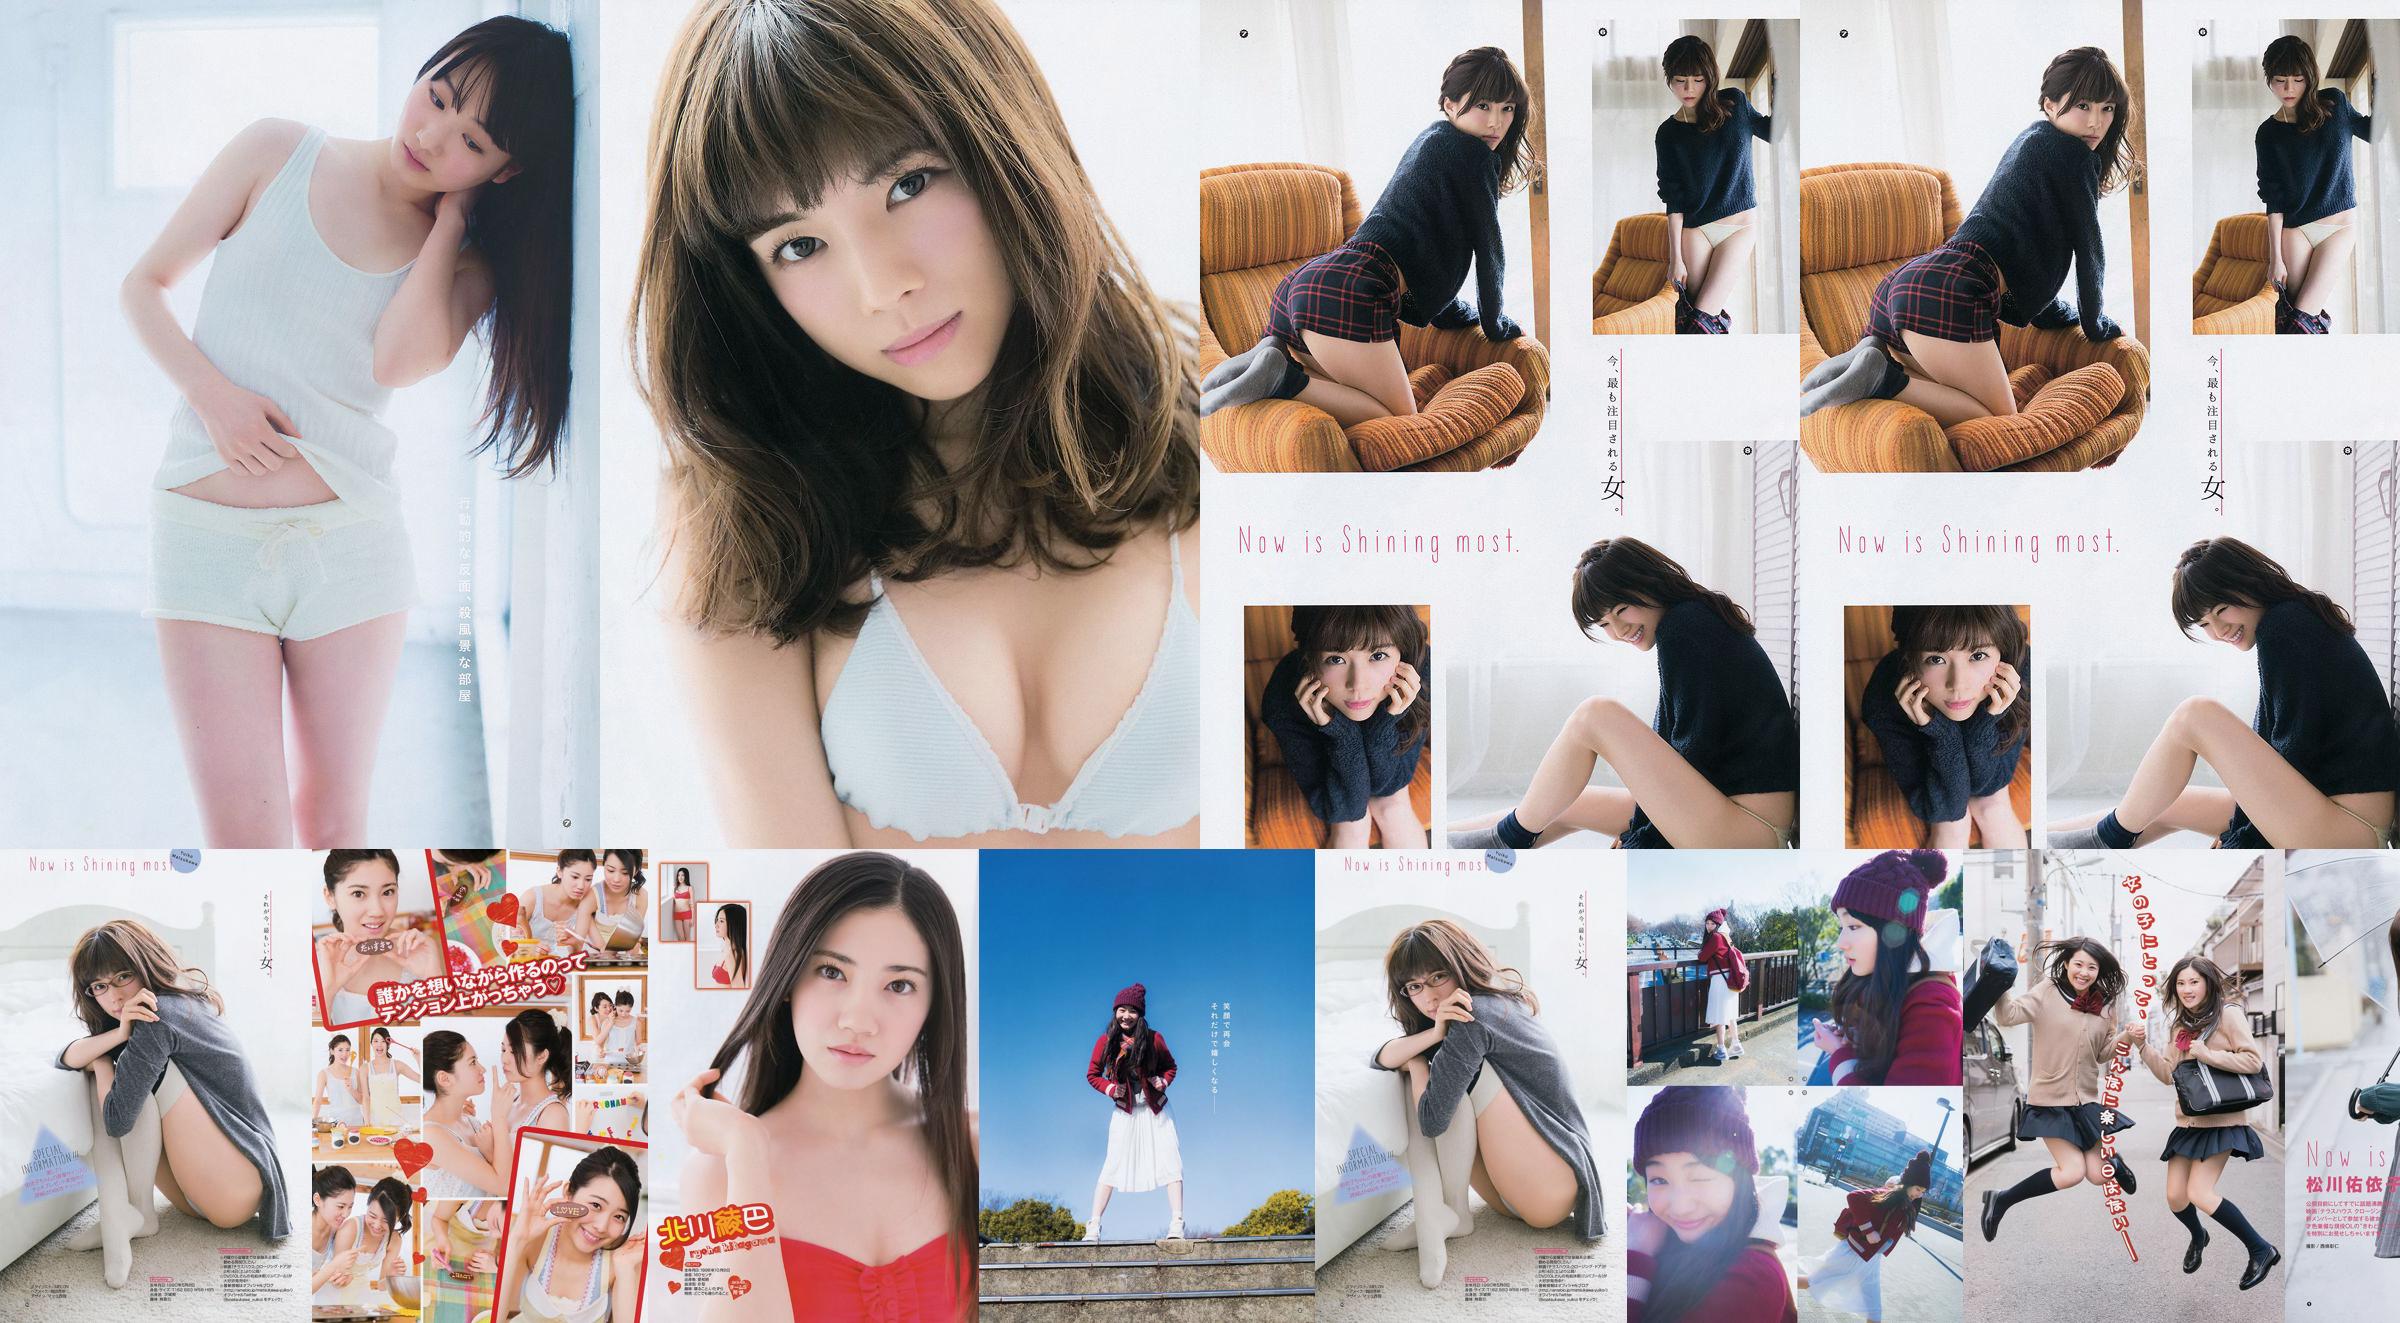 [Young Gangan] Ryoha Kitagawa Ami Miyamae Yuiko Matsukawa Narumi Akizuki 2015 No.04 ภาพถ่าย No.9729f7 หน้า 3